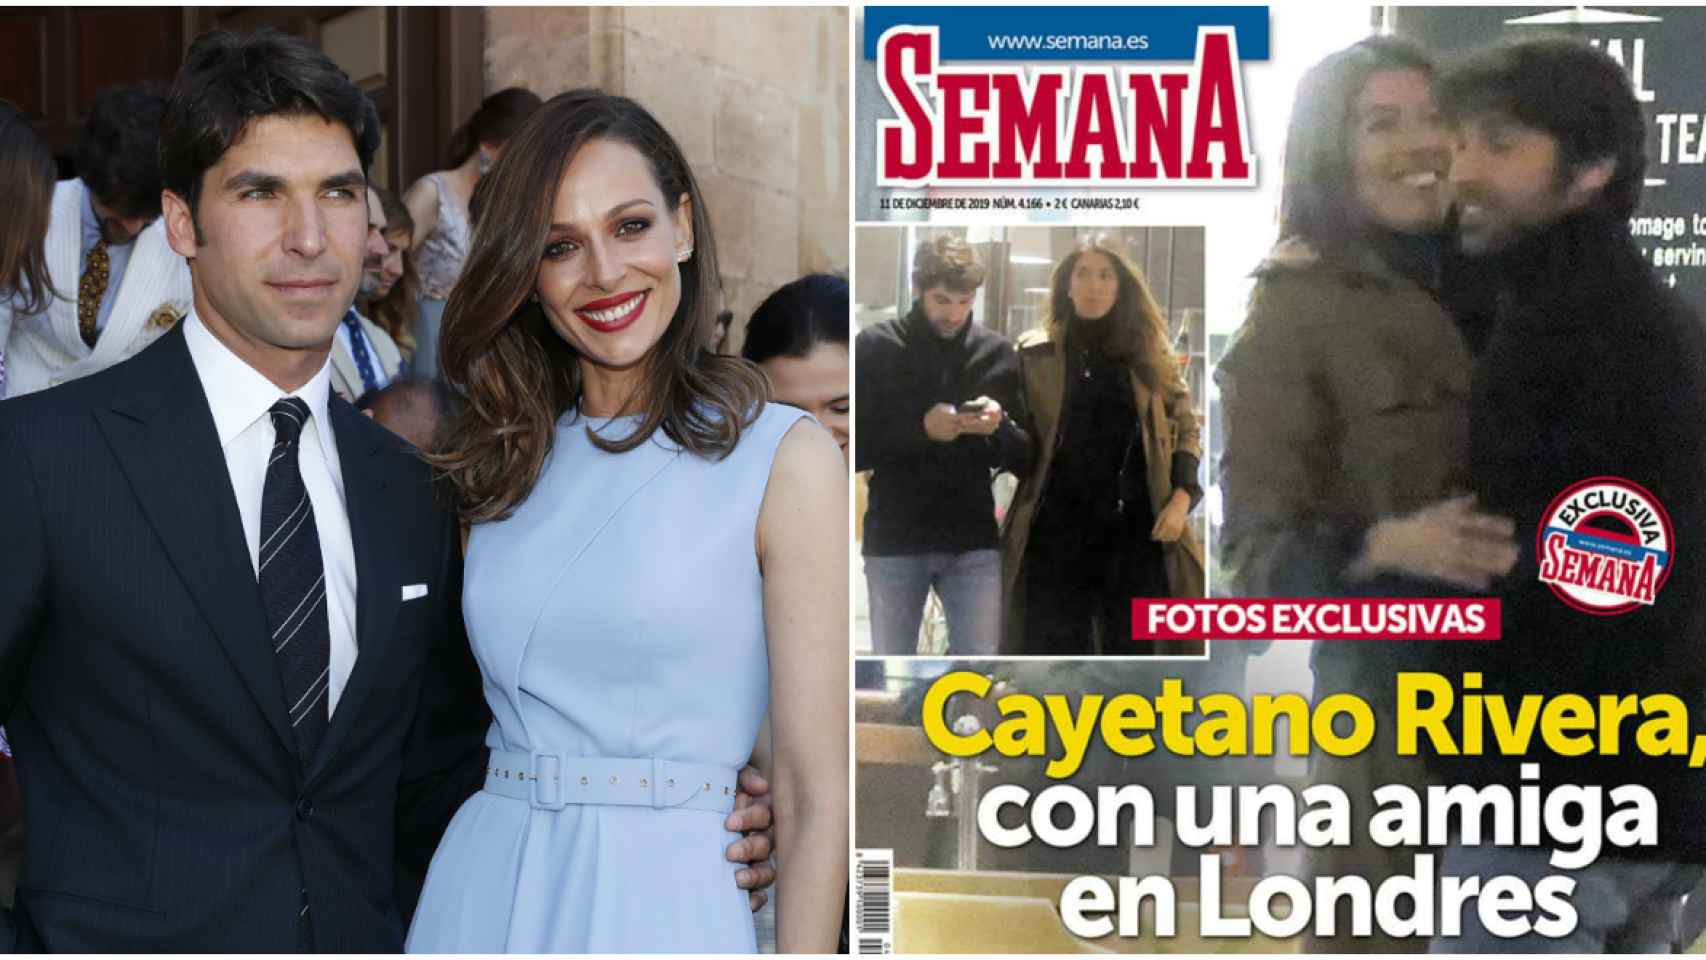 Cayetano Rivera junto a su mujer, Eva González y en la portada de la revista junto a su amiga.